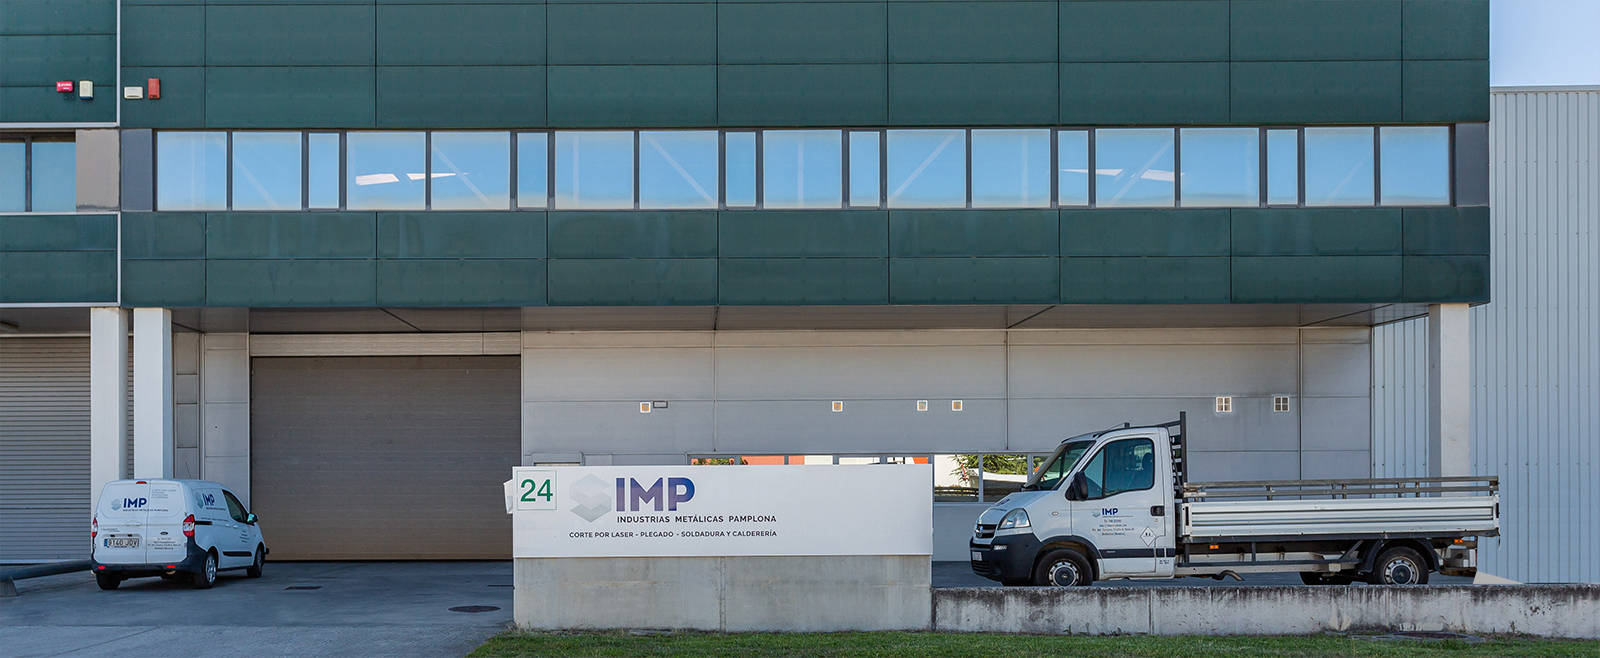 IMP Pamplona Industrias Metálicas Pamplona